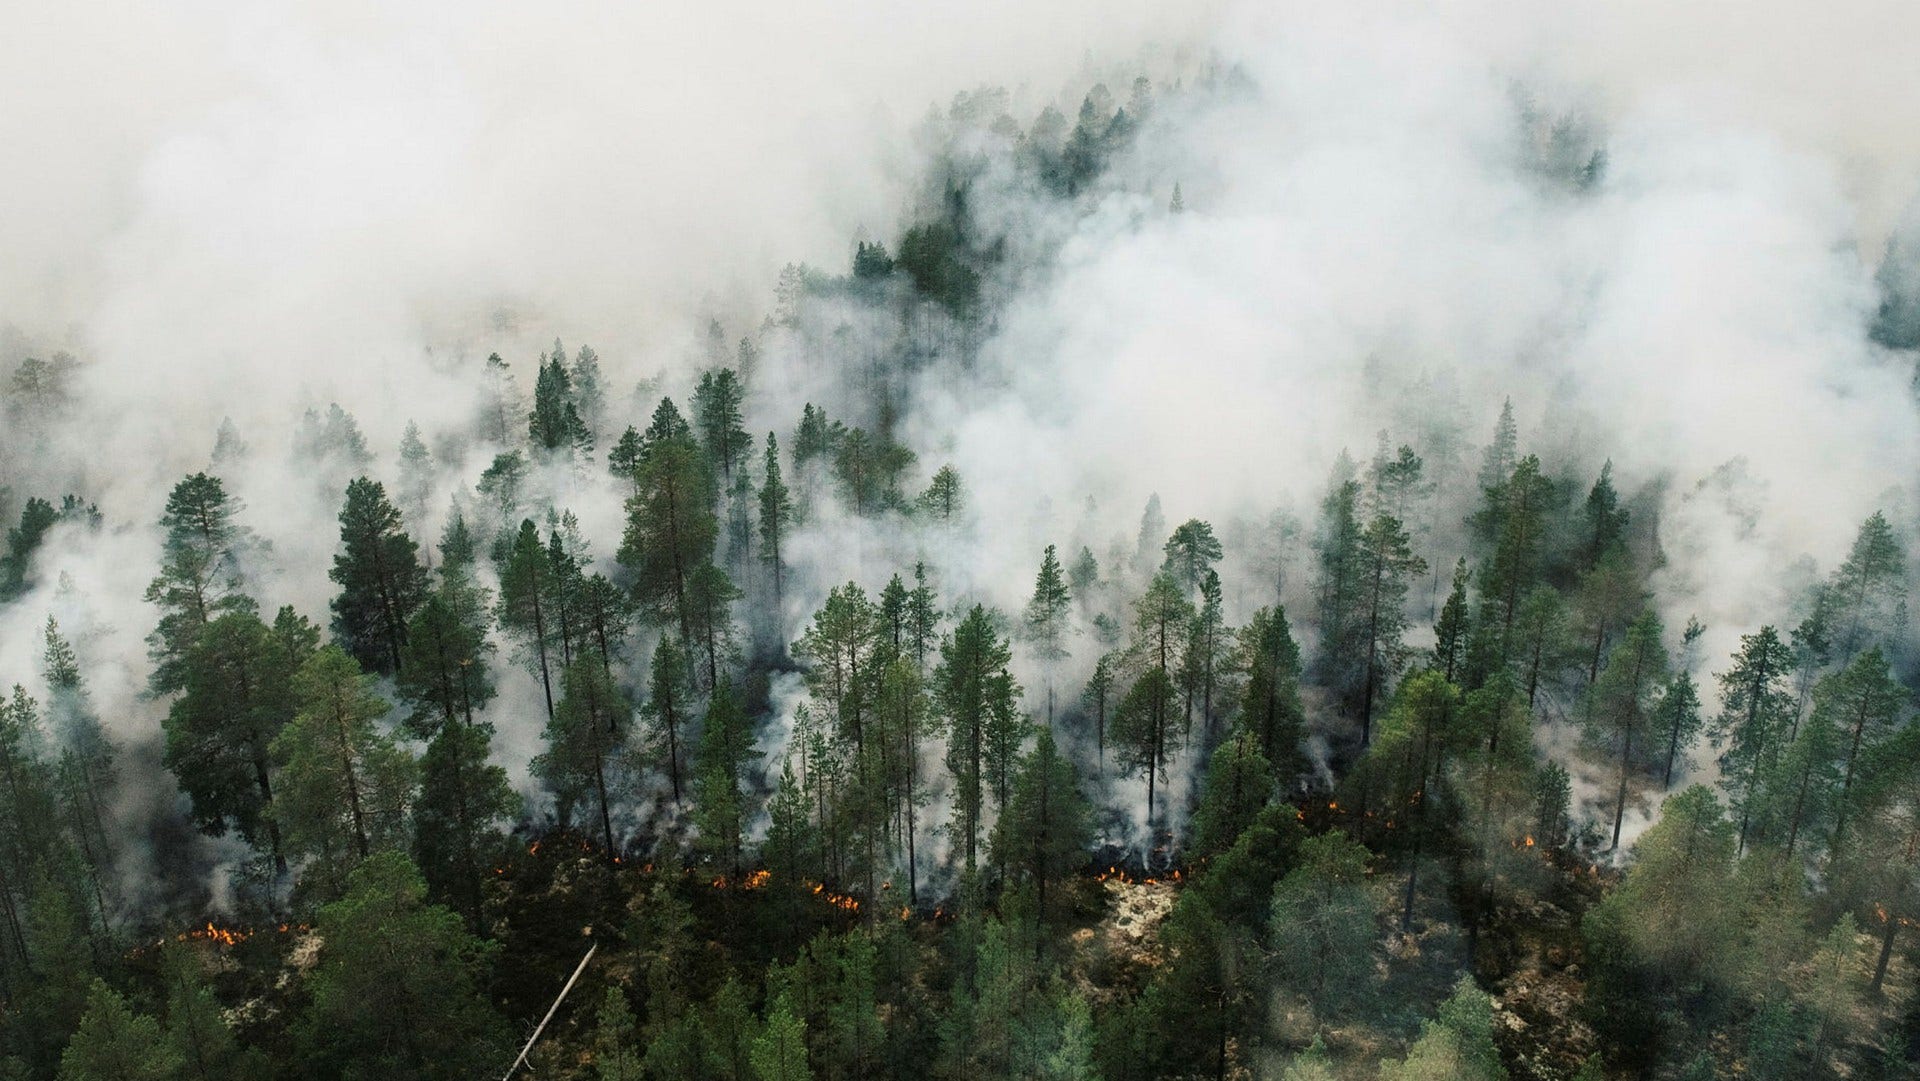 Av de 180 kommuner som svarat på enkäten anger 80 procent att de inte har undersökt risken för gräs- och skogsbränder över huvud taget.